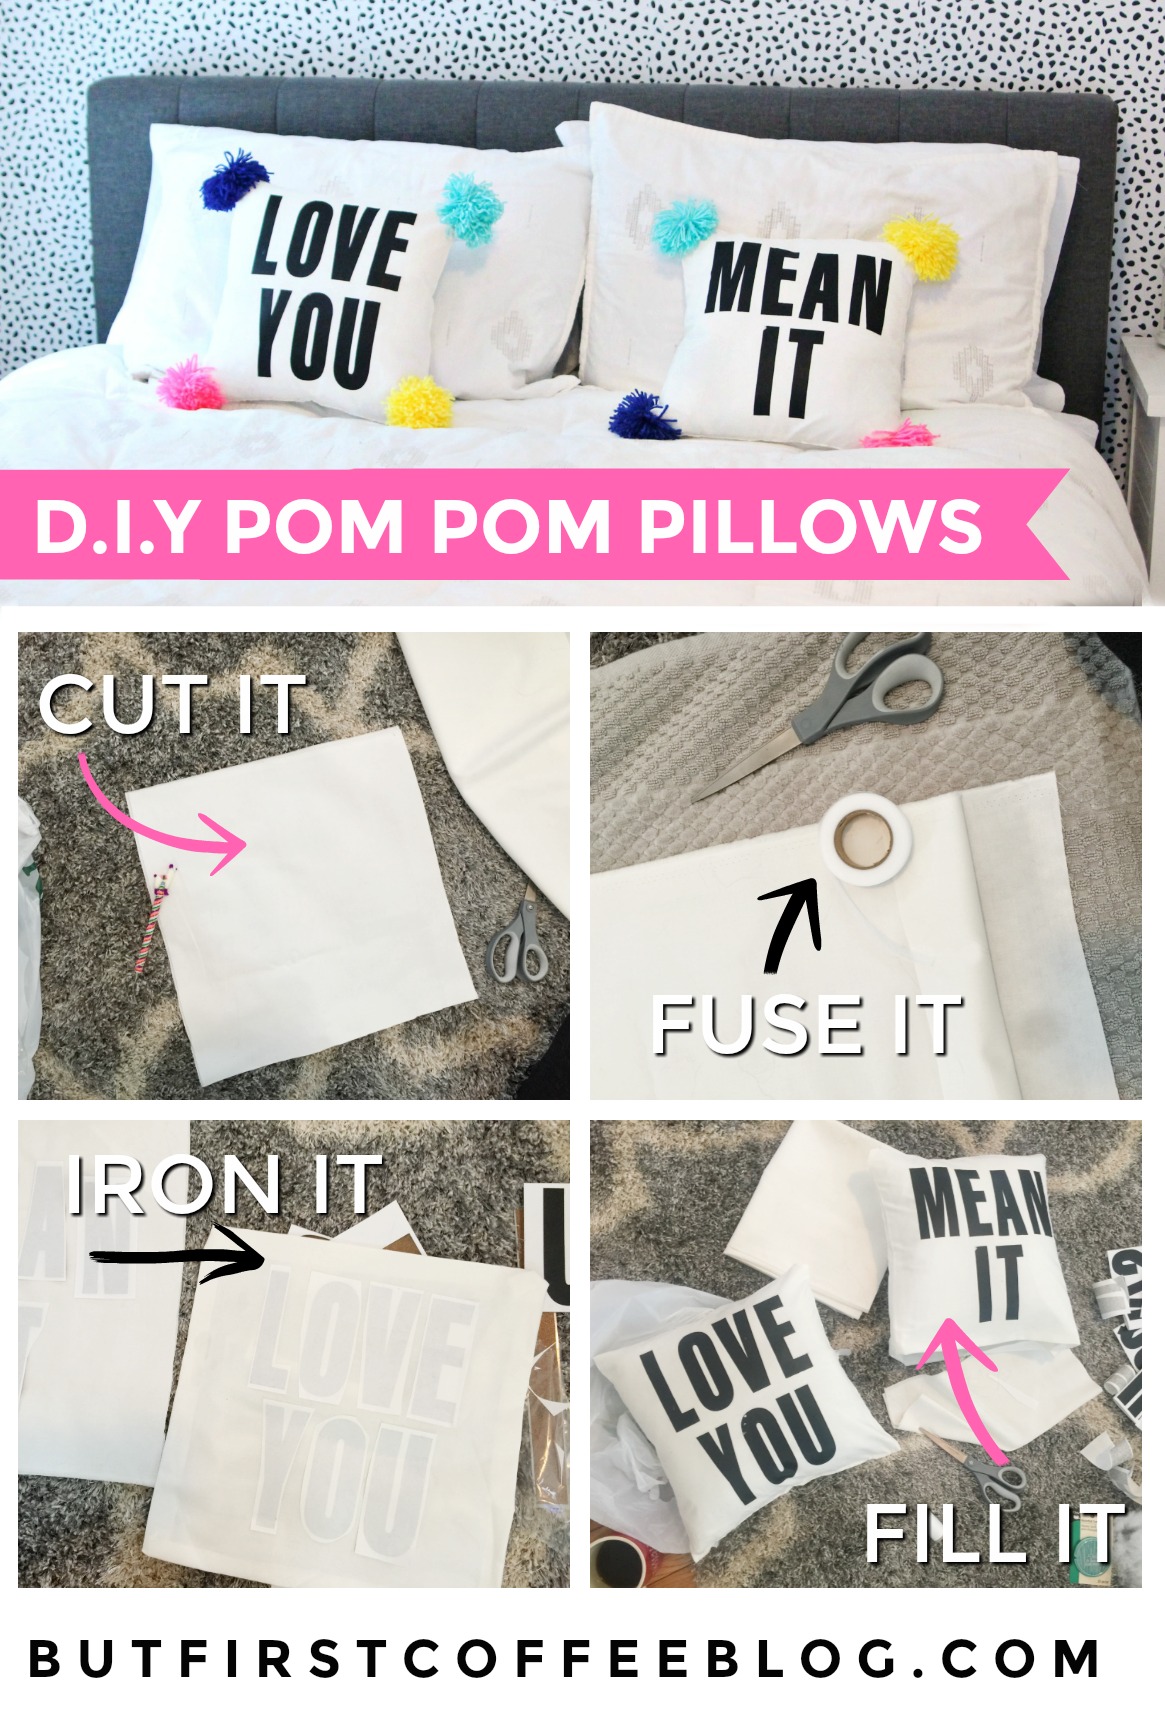 DIY Pom Pom Pillow with Text | How to Make a No-Sew Pillowcase